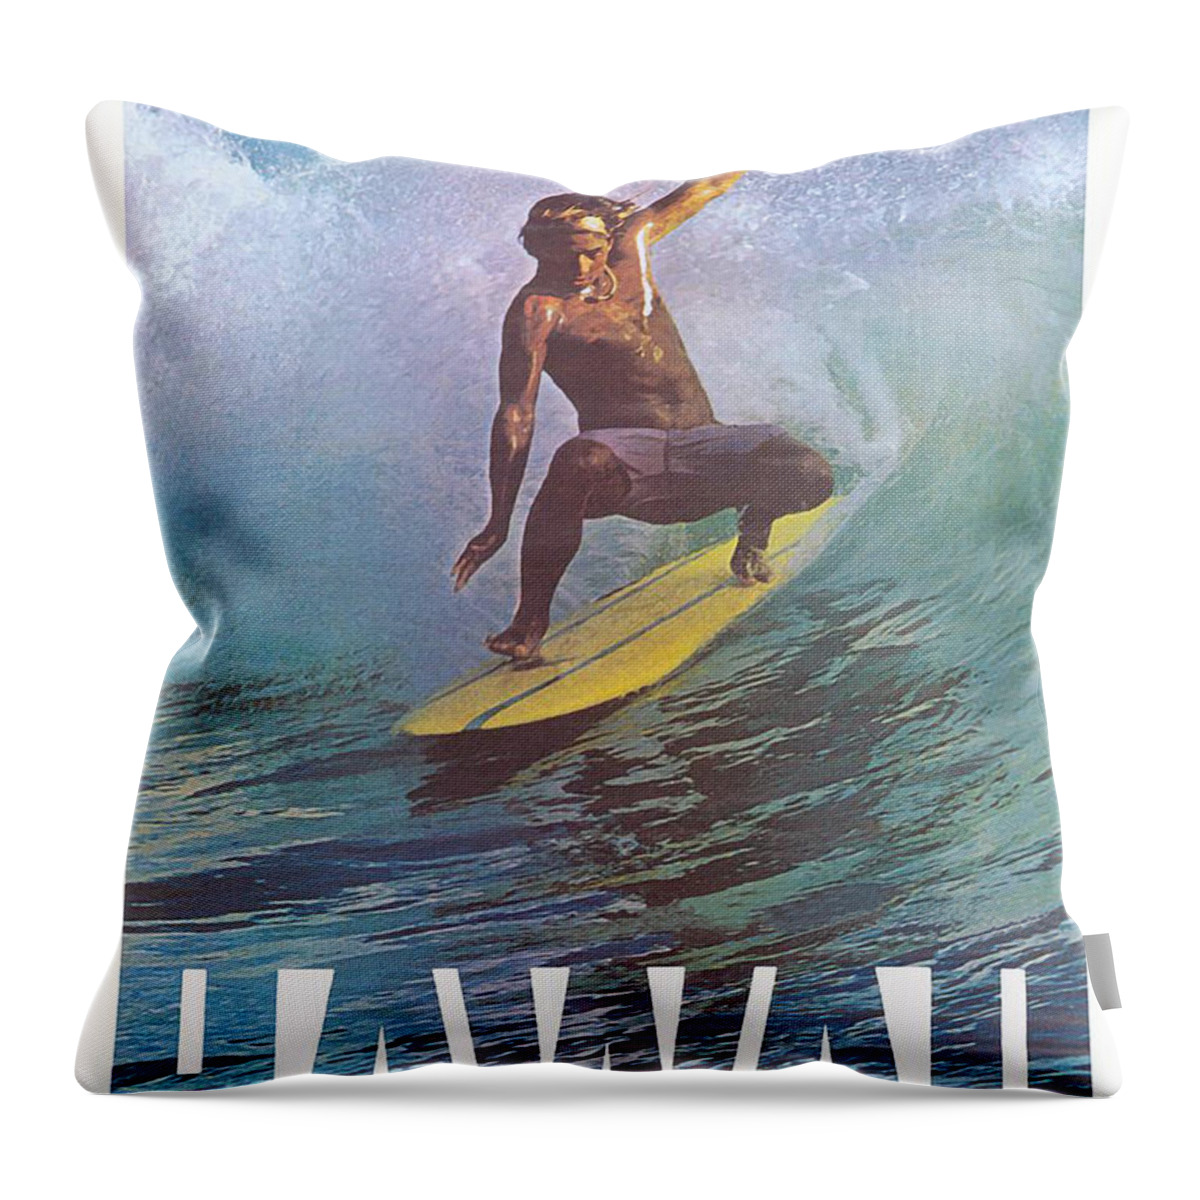 Hawaii Throw Pillow featuring the digital art Hawaii surfer by Long Shot